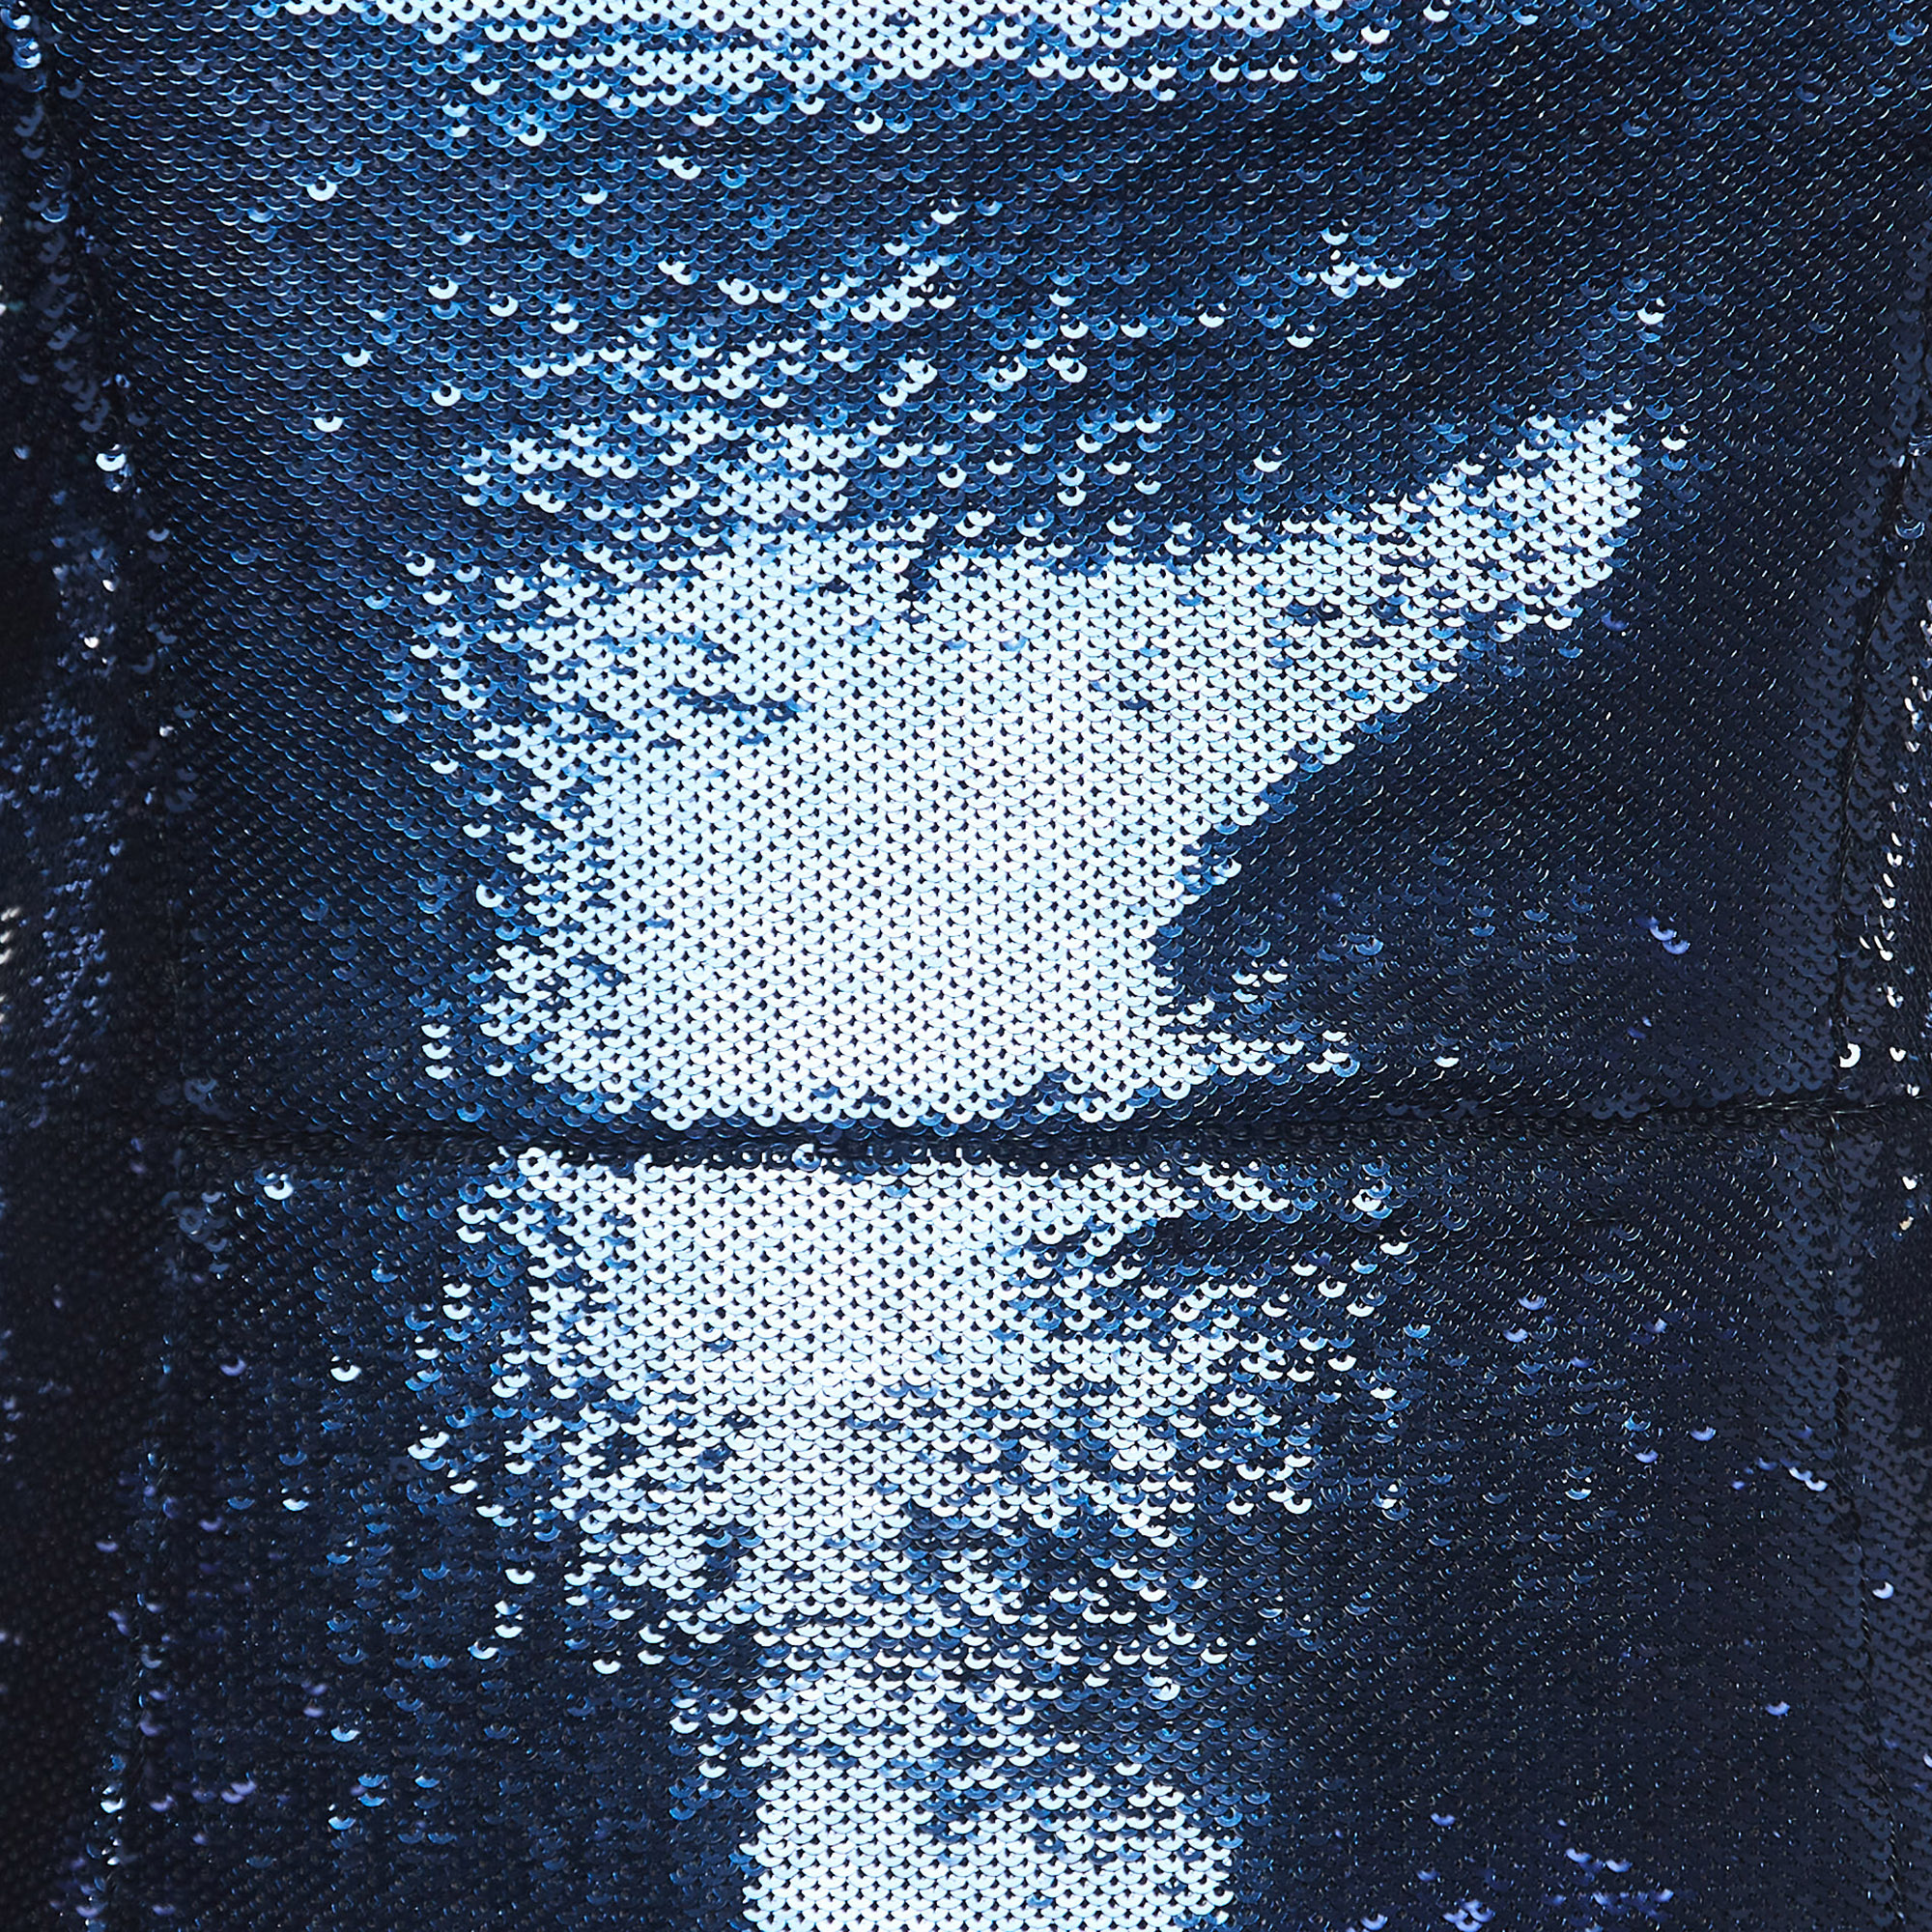 Diane Von Furstenberg Blue Sequined Midi Dress S